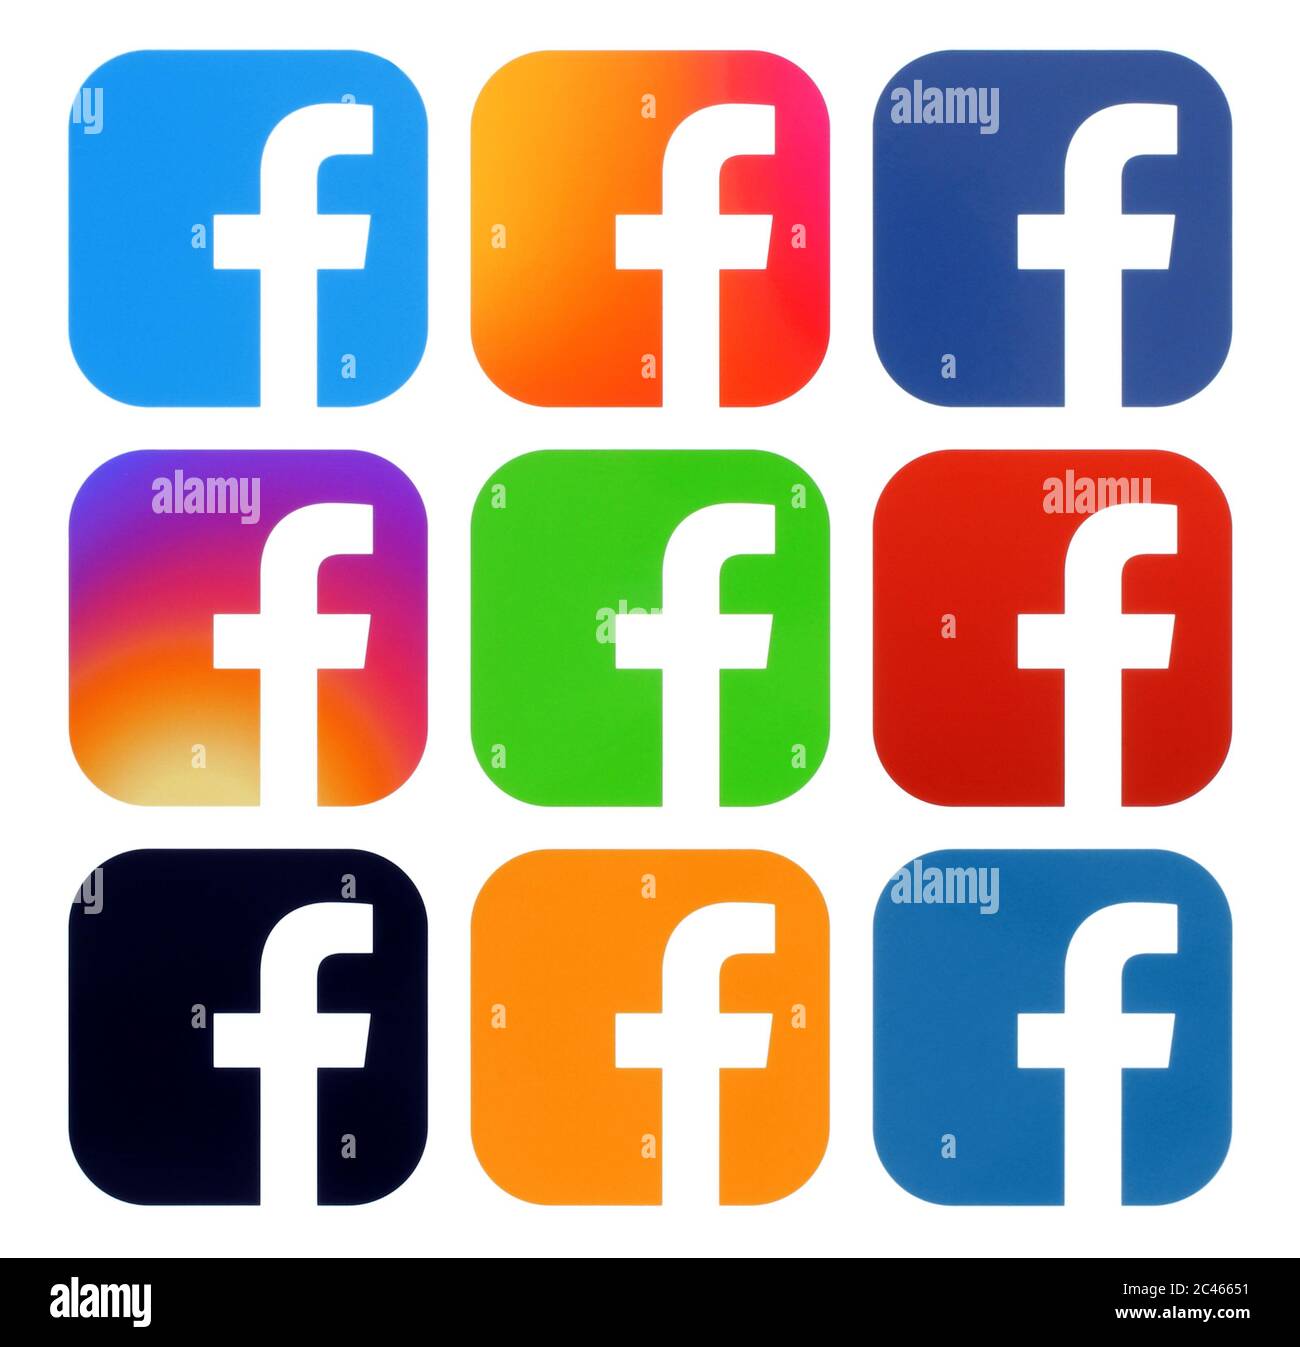 Kiev, Ukraine - Aplril 25, 2019: Collection de logos Facebook en couleur, imprimé sur papier blanc. Facebook est un service de réseautage social bien connu Banque D'Images